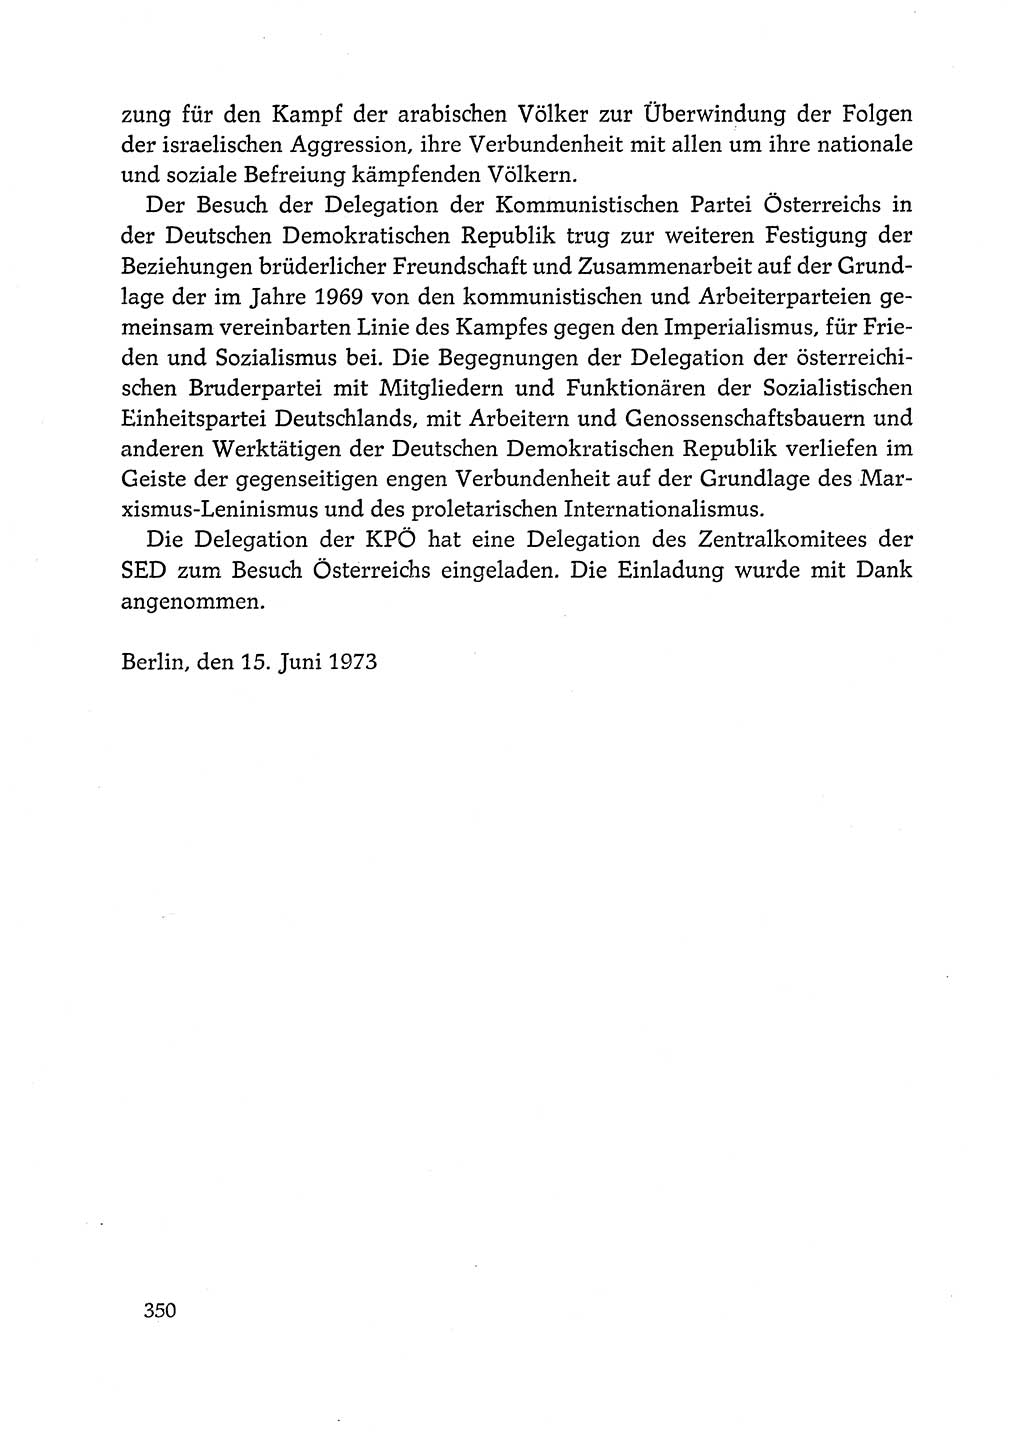 Dokumente der Sozialistischen Einheitspartei Deutschlands (SED) [Deutsche Demokratische Republik (DDR)] 1972-1973, Seite 350 (Dok. SED DDR 1972-1973, S. 350)